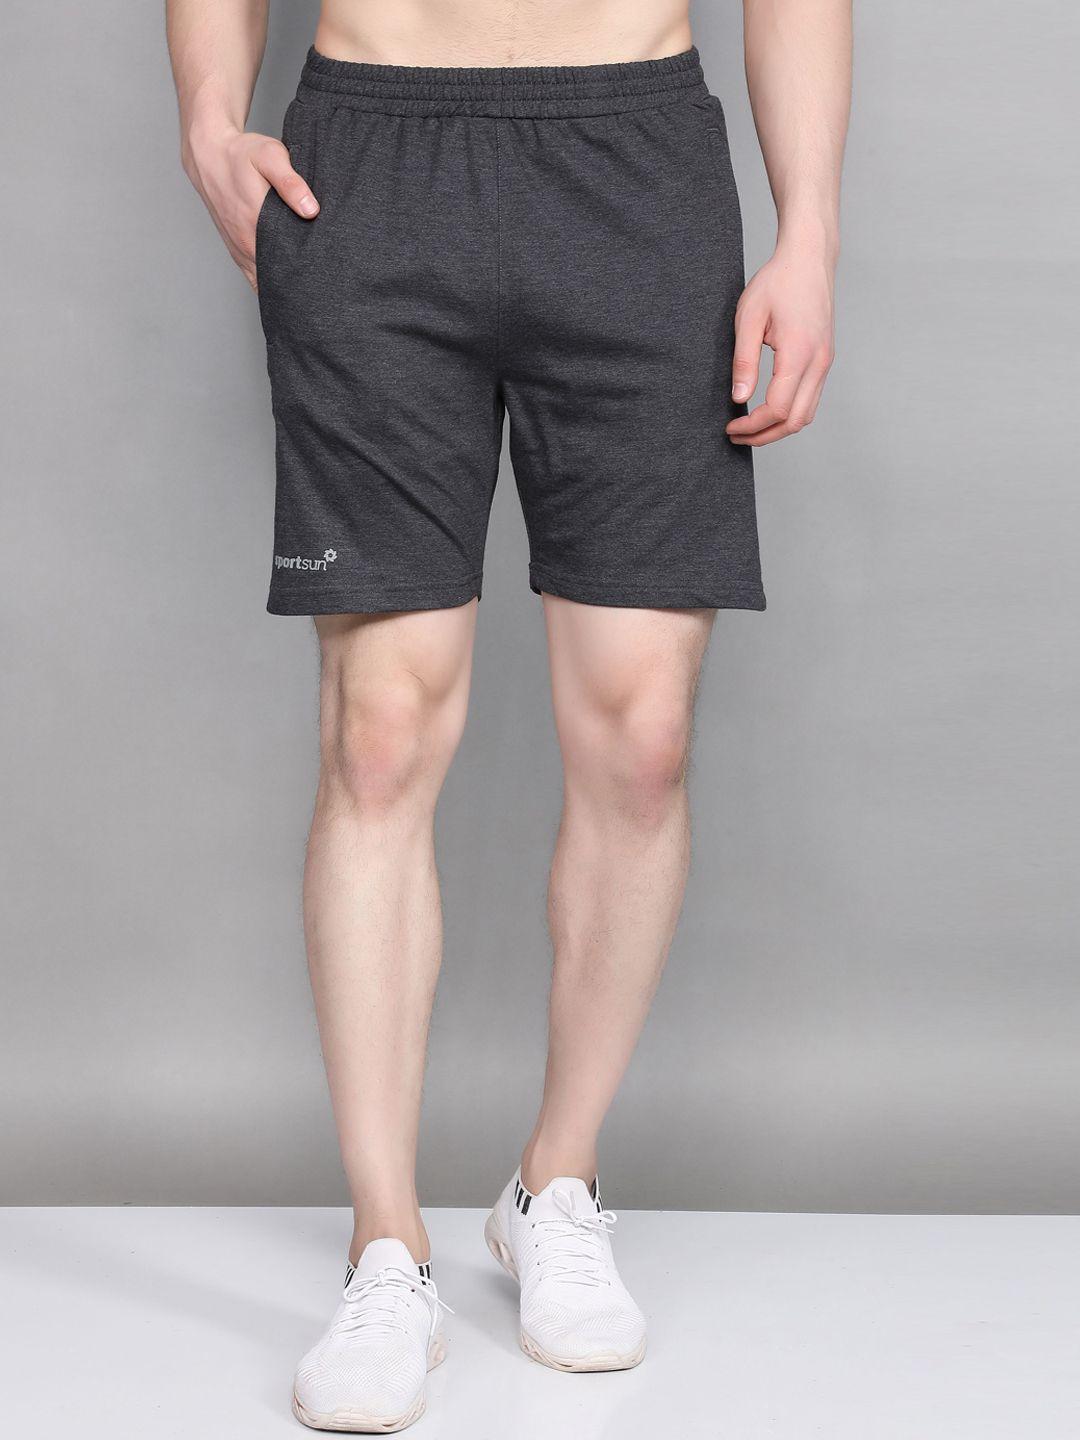 sport-sun-men-outdoor-shorts